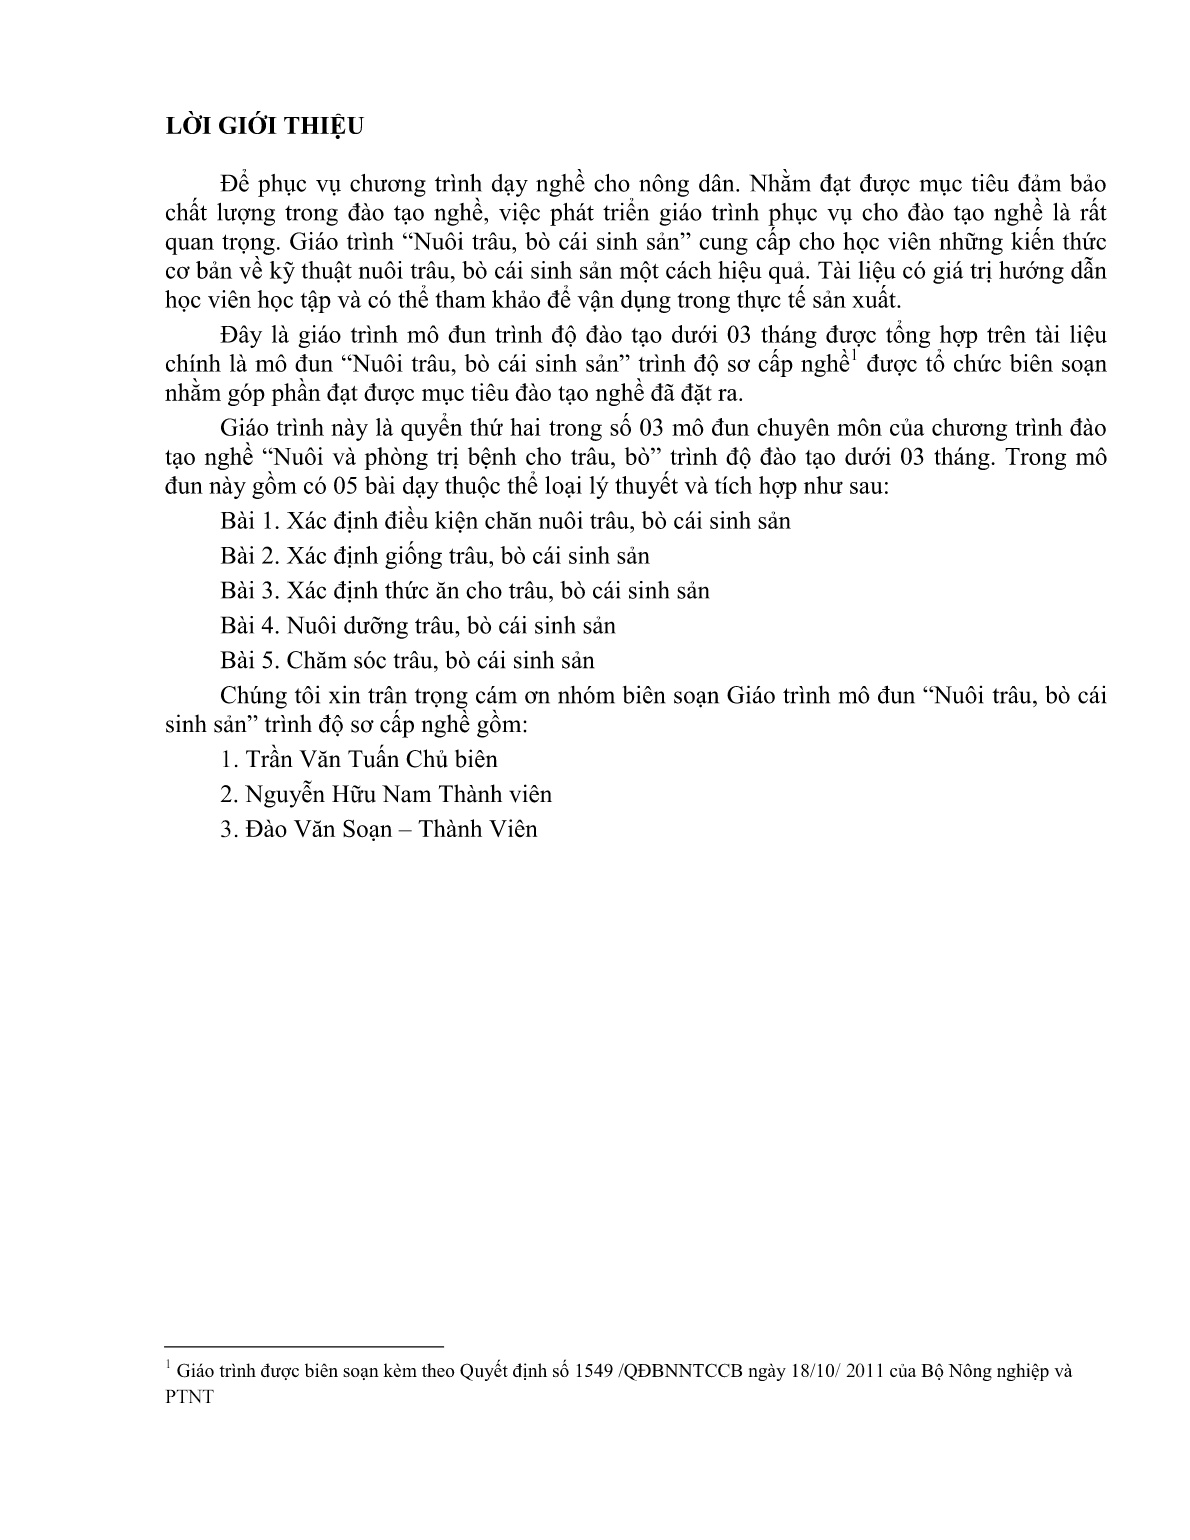 Giáo trình mô đun Nuôi trâu, bò cái sinh sản (Trình độ: Đào tạo dưới 3 tháng) trang 2